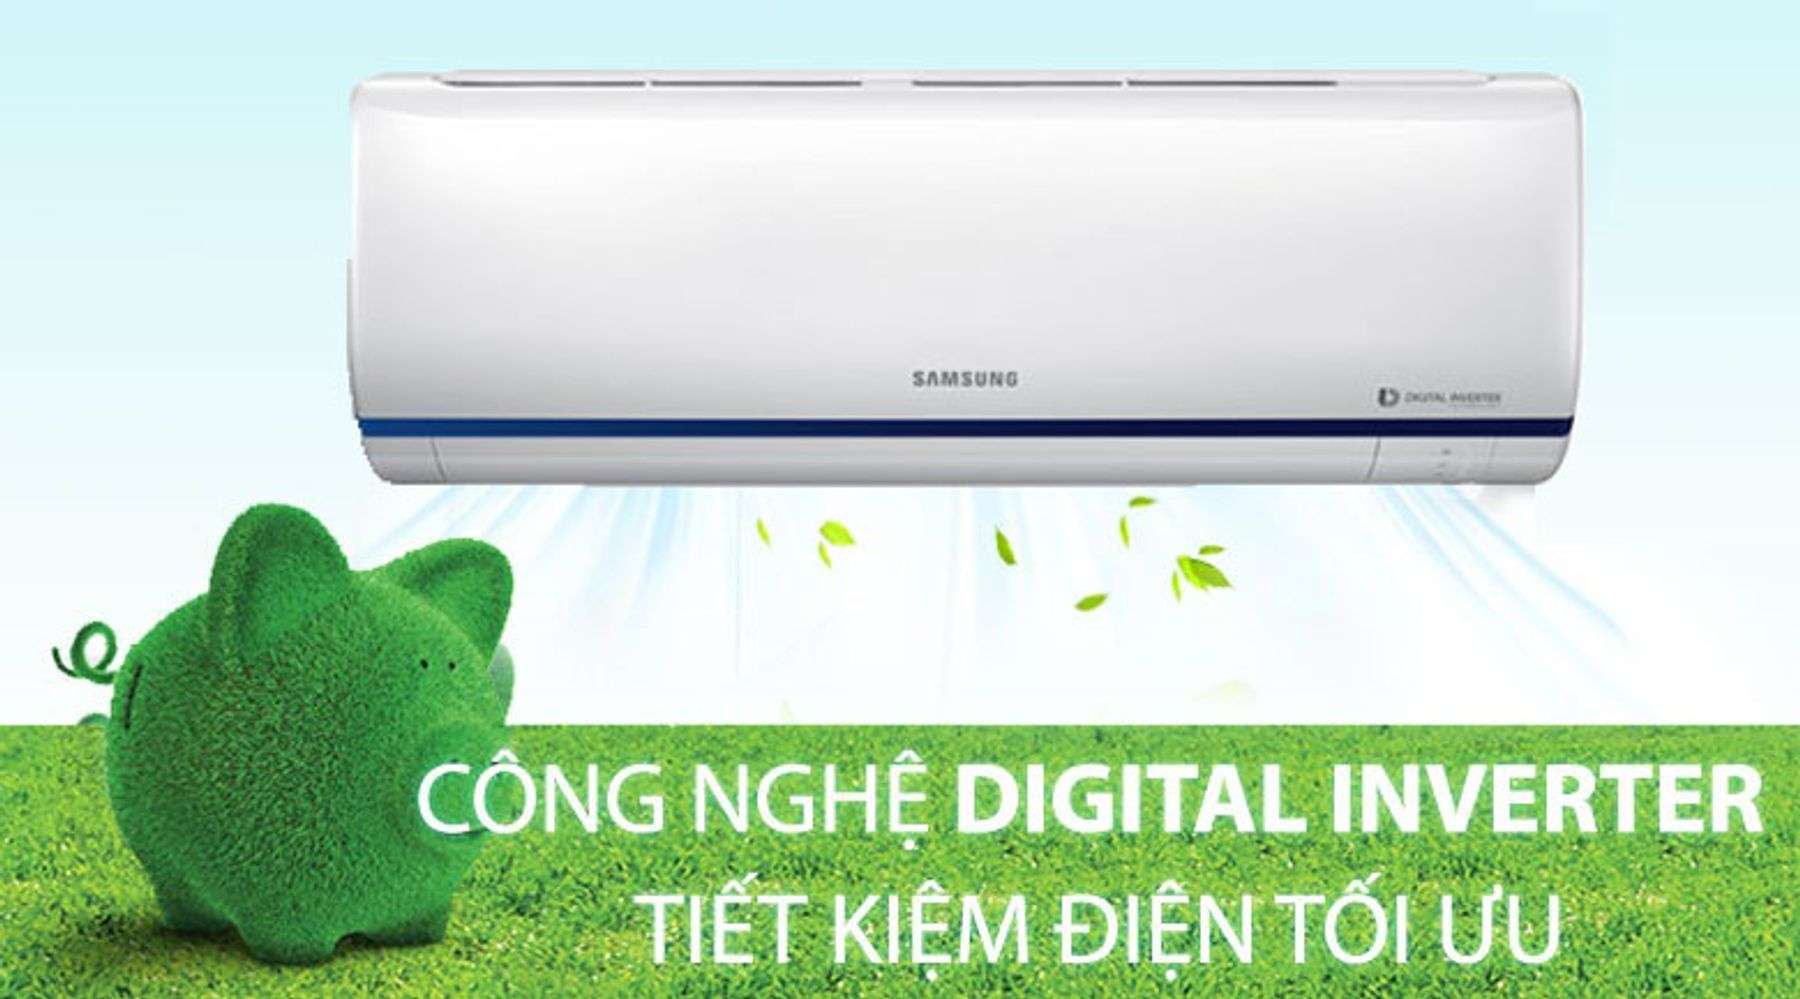 Máy lạnh Samsung Inverter 1 HP tiết kiệm điện